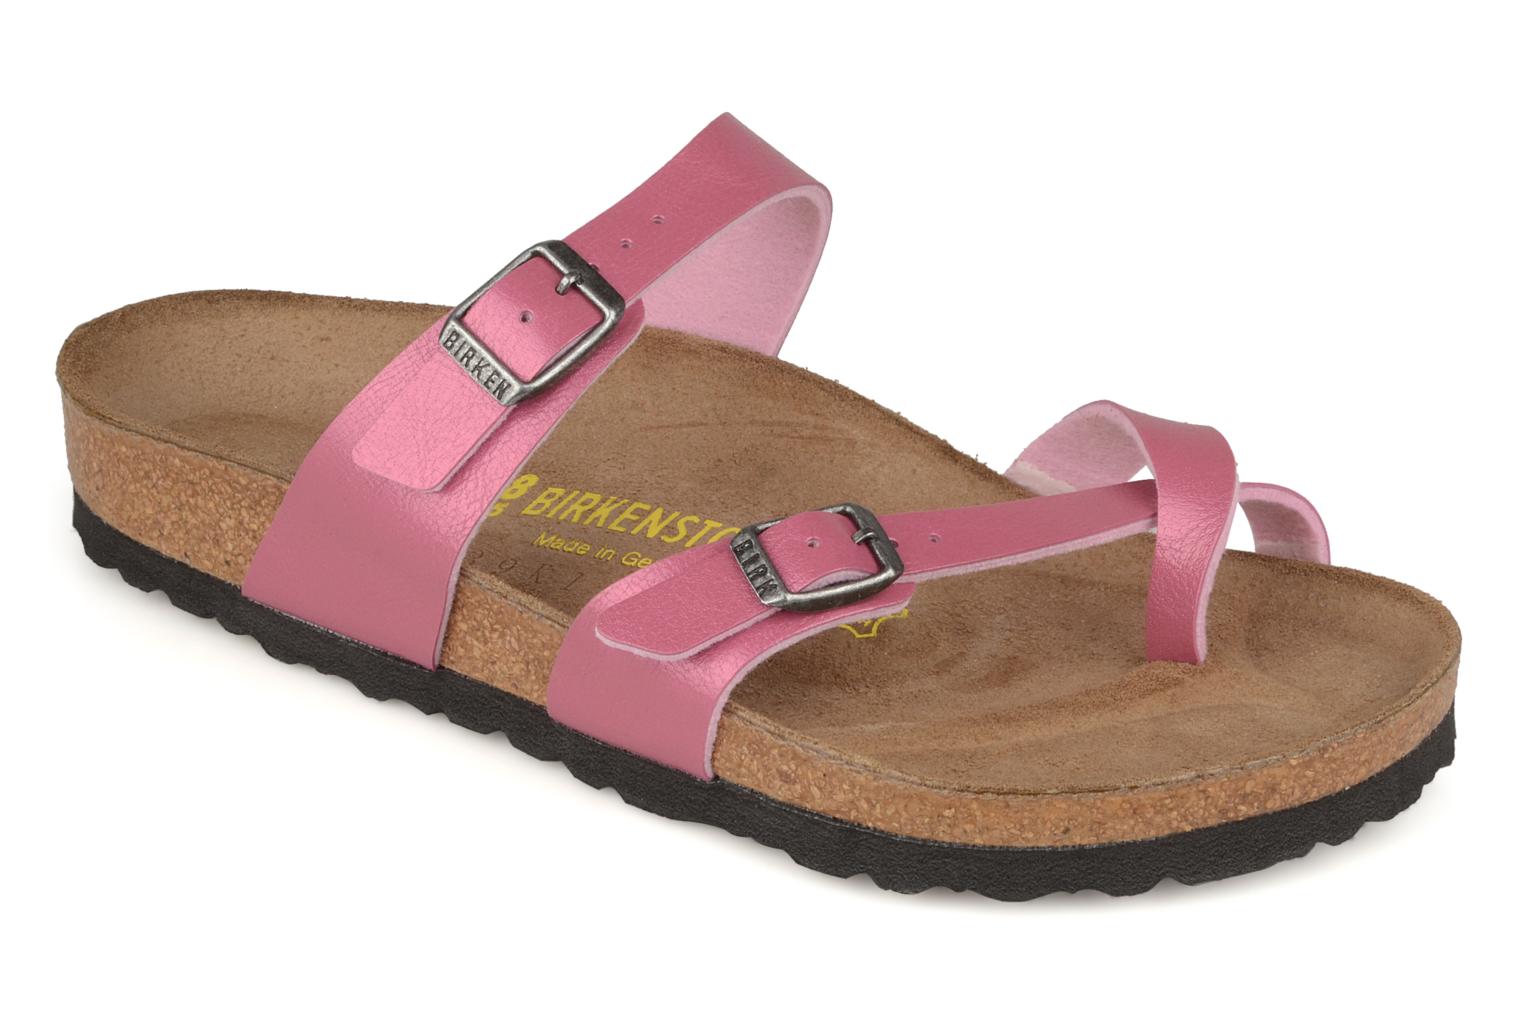 Birkenstock Mayari Sandals in Pink at Sarenza.co.uk (61324)